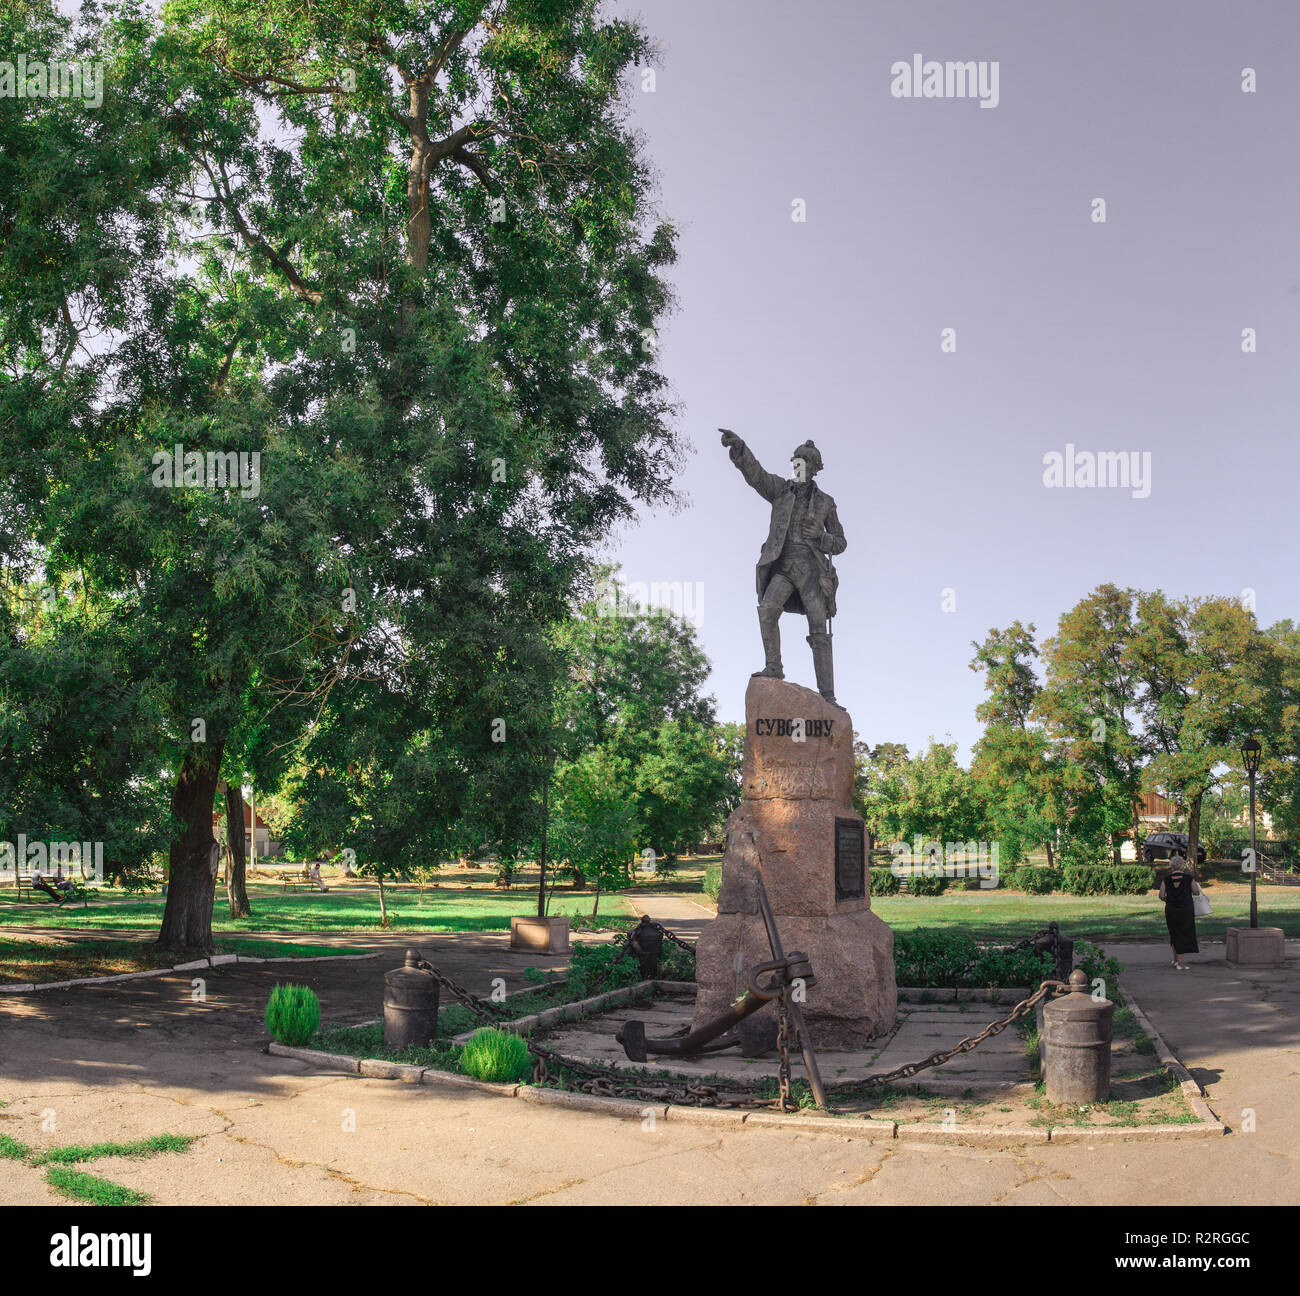 Ochakov, Ukraine - 09.22.2018. Monument to the Russian commander Alexander Suvorov in Ochakov city, Ukraine Stock Photo